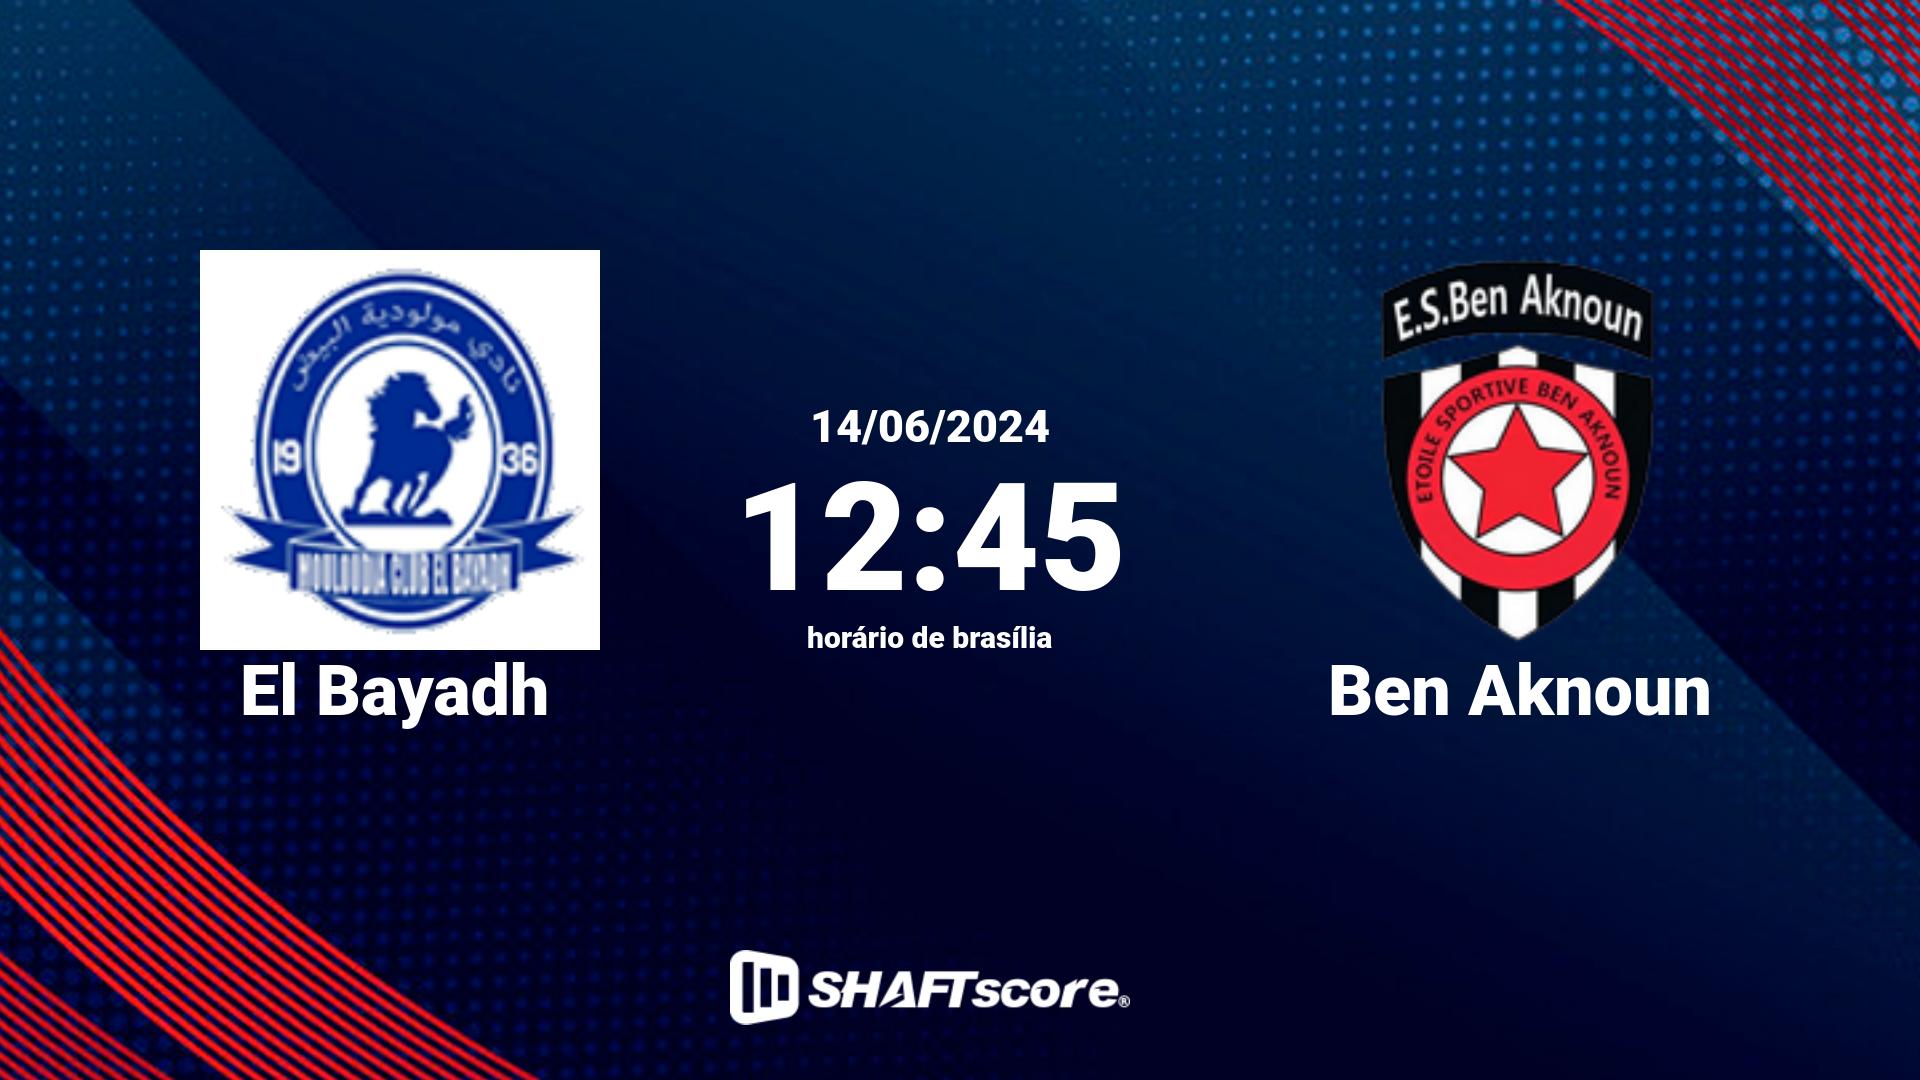 Estatísticas do jogo El Bayadh vs Ben Aknoun 14.06 12:45